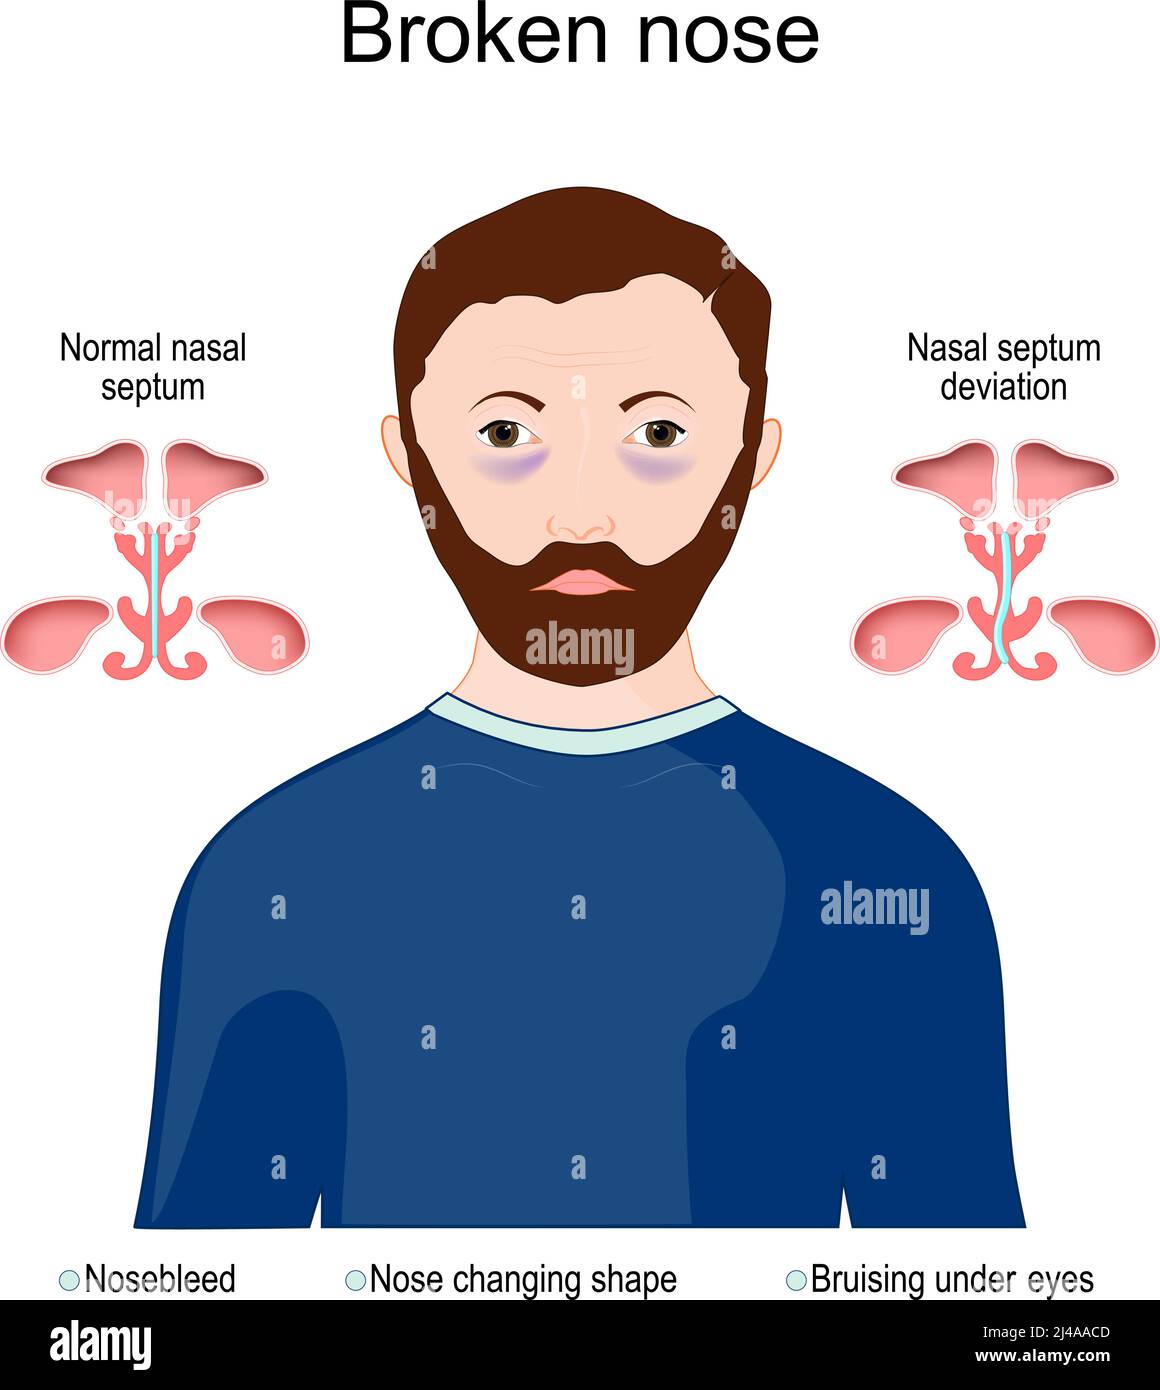 Symptômes d'un nez brisé : nez changeant de forme, ecchymoses sous les yeux. Comparaison de la déviation normale du septum nasal et du septum nasal. Diagramme vectoriel Illustration de Vecteur